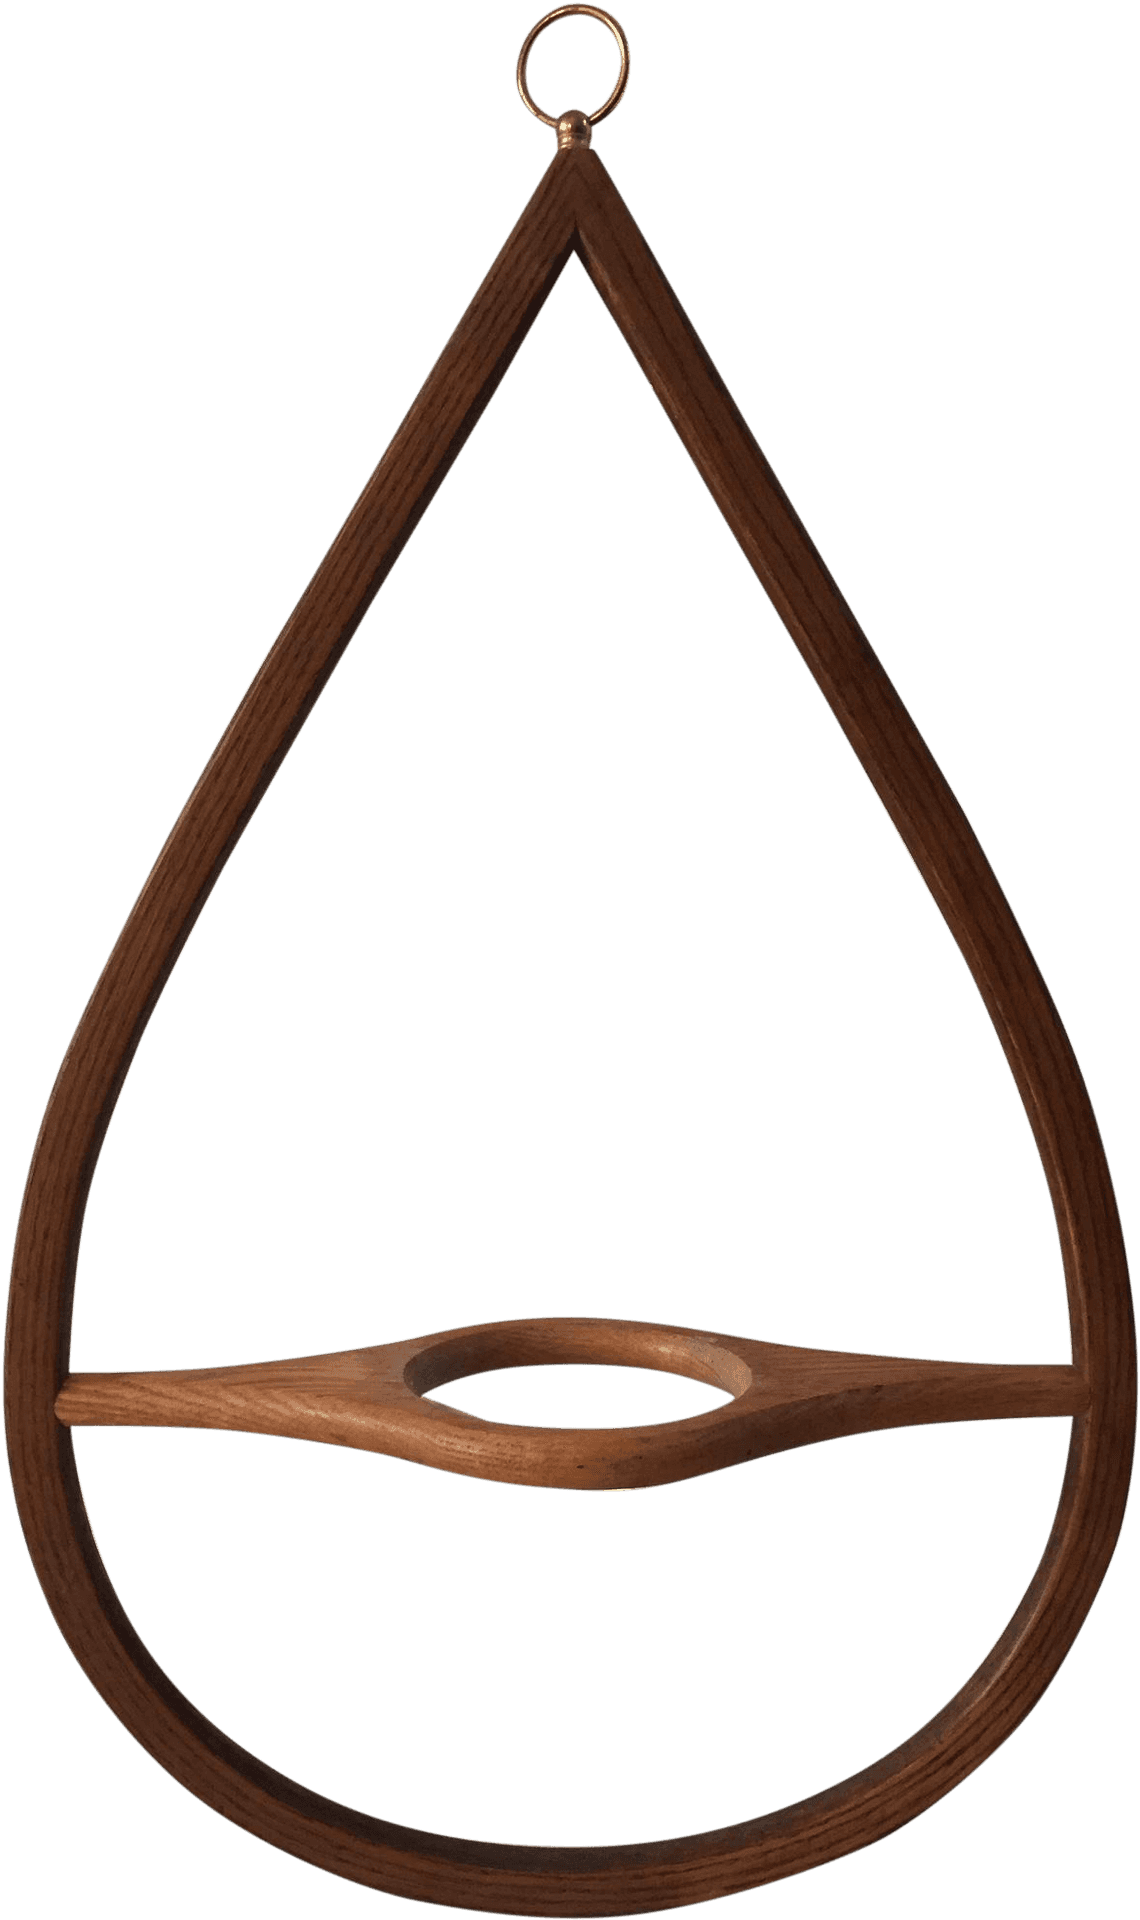 Wooden Teardrop Swing Chair PNG